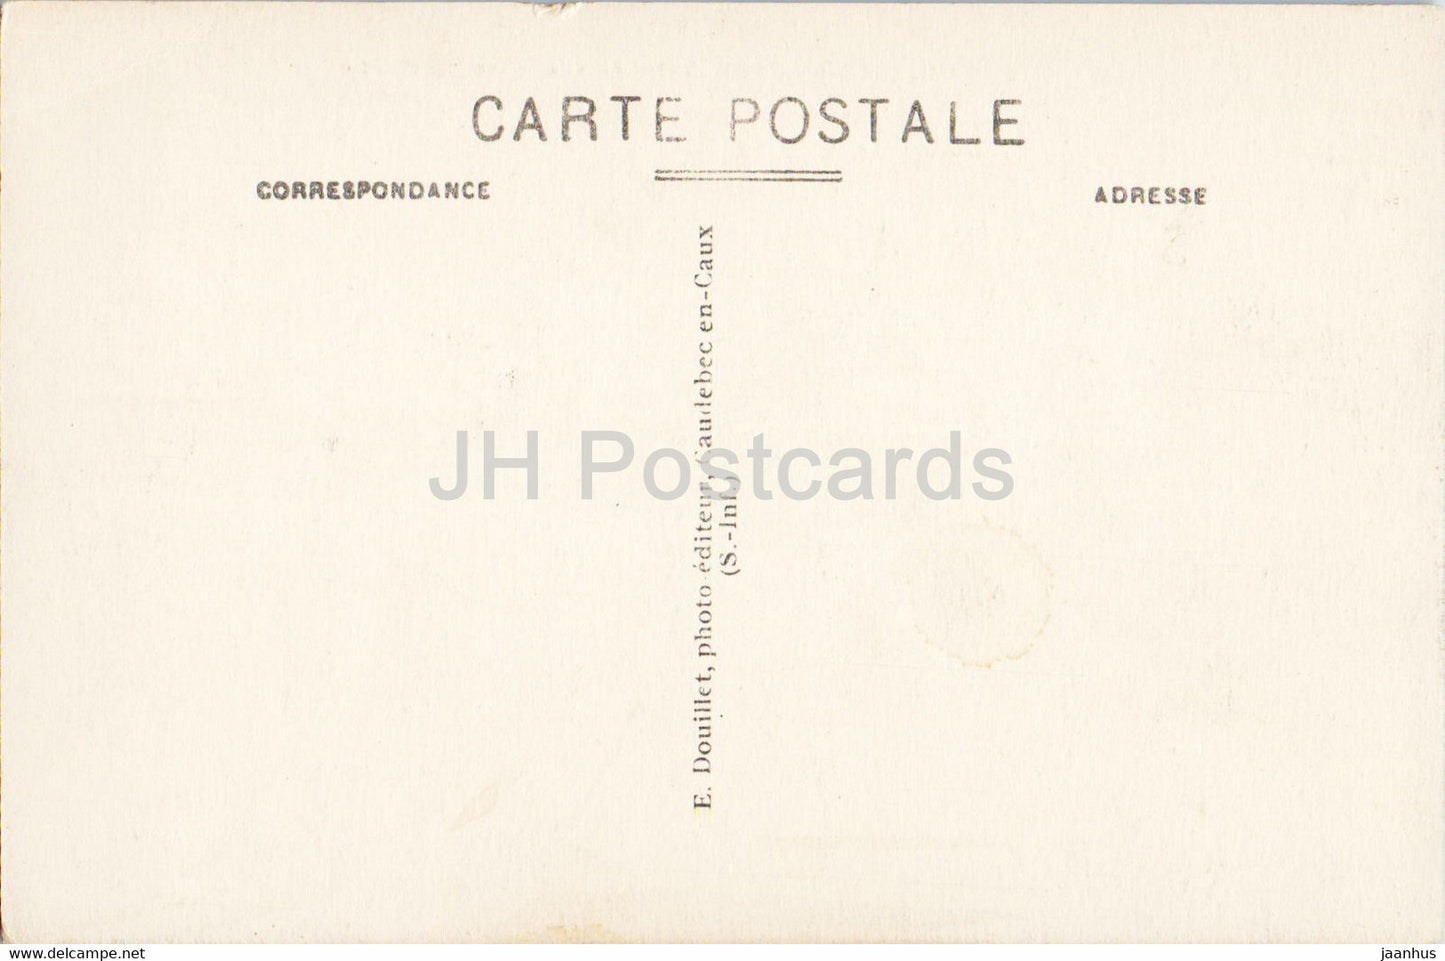 Caudebec en Caux - Vue prise du Calidu - 15 - alte Postkarte - Frankreich - unbenutzt